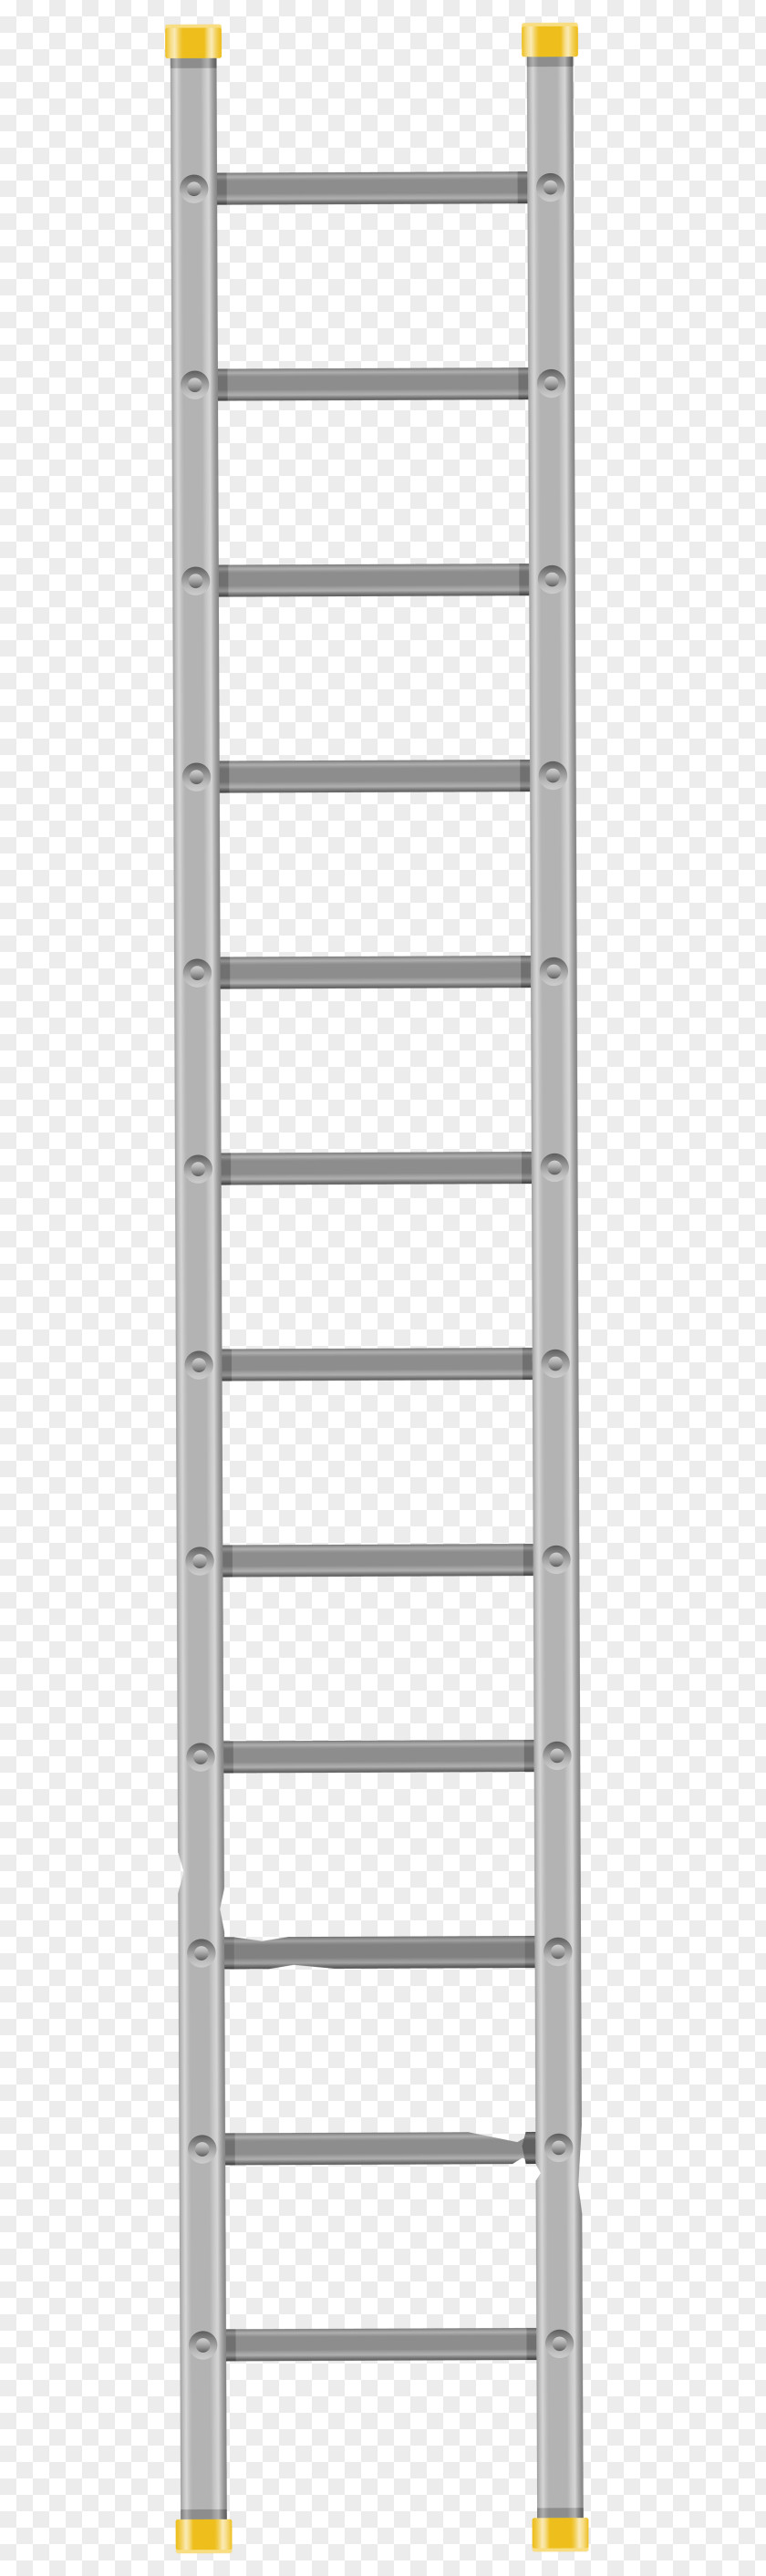 Wooden Ladders Ladder Sticker Clip Art PNG